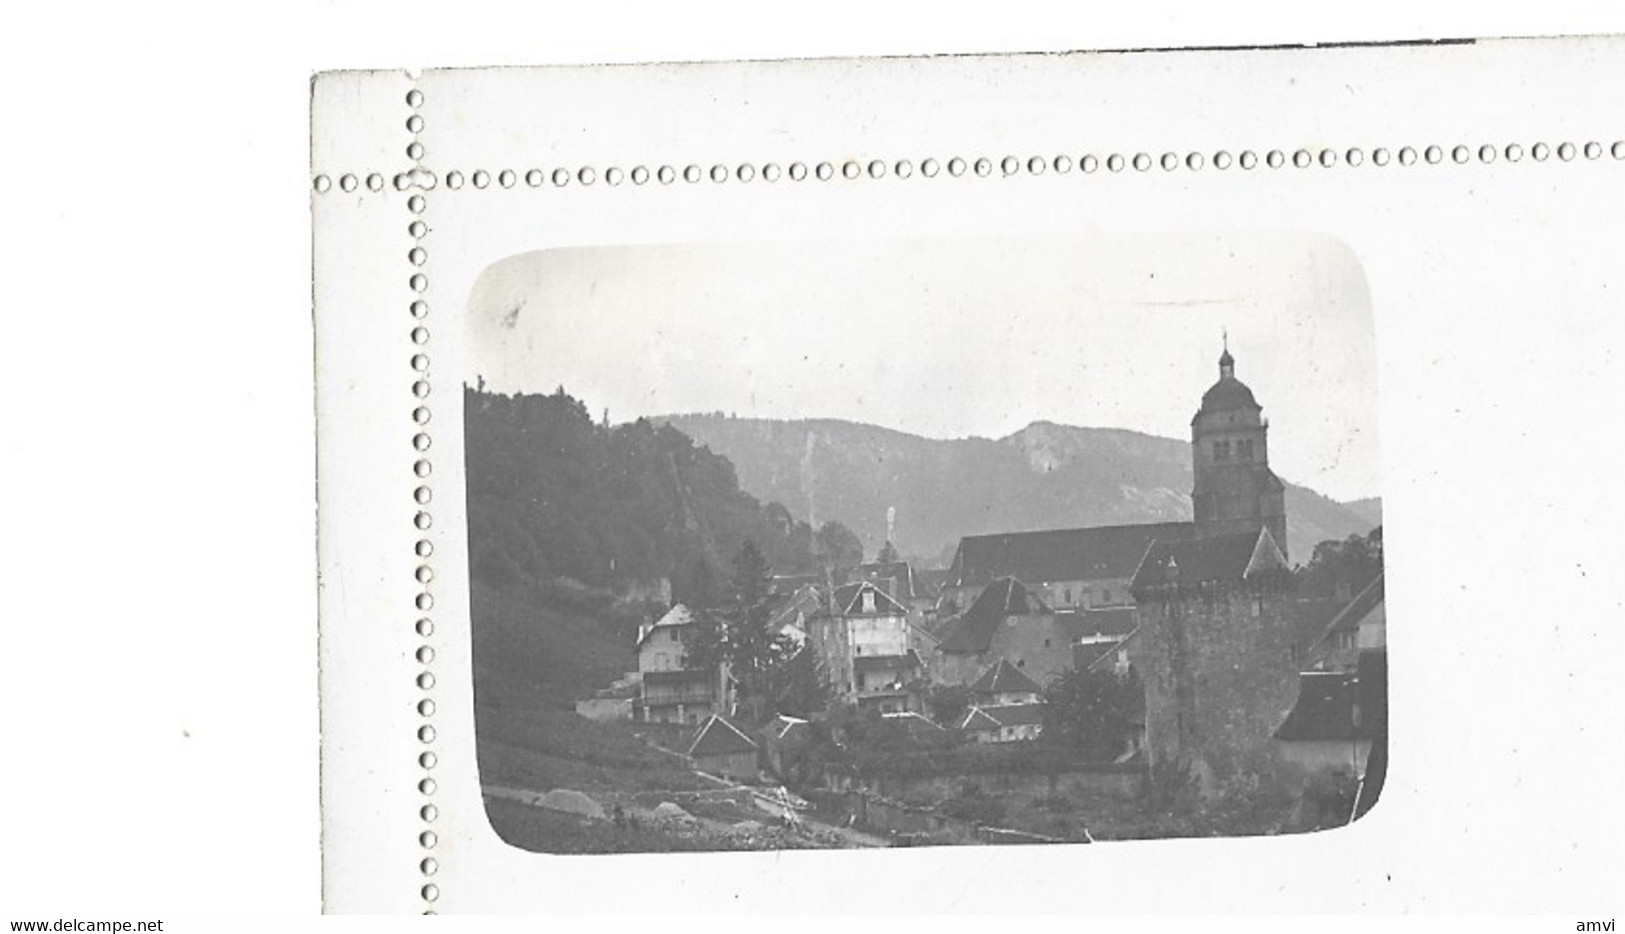 22-1 - 194 rare  lot de 5 cartes lettre photo lieu à identifier R Guileminot paris